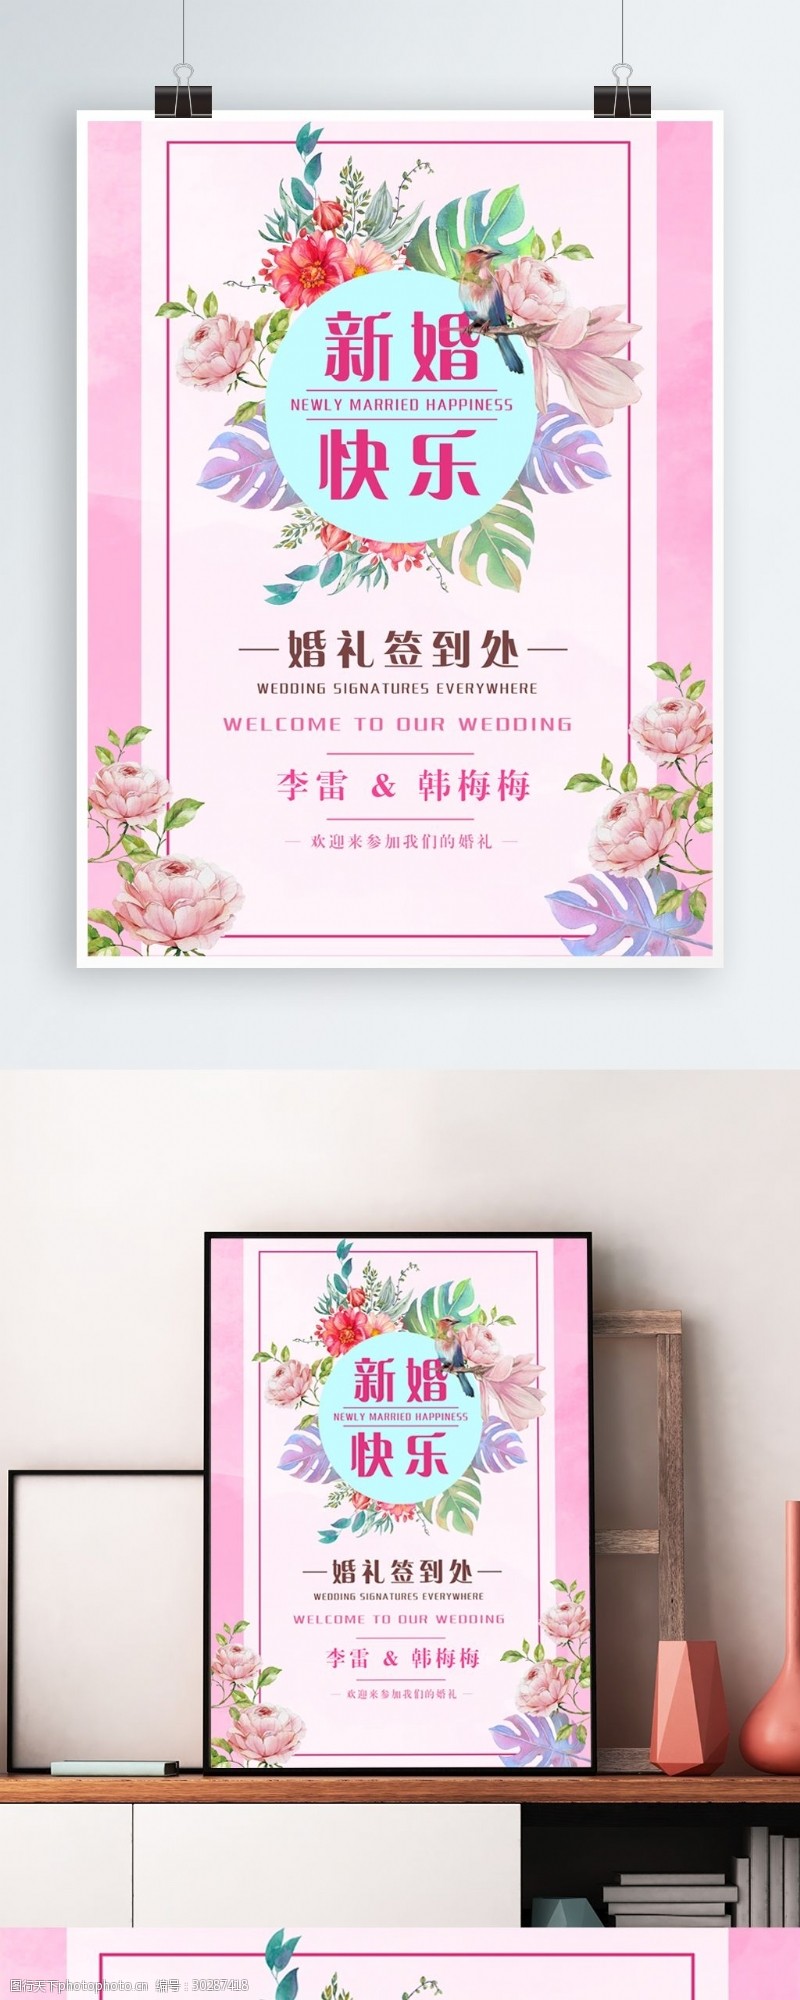 新婚快乐简单清新粉红色婚礼节日海报